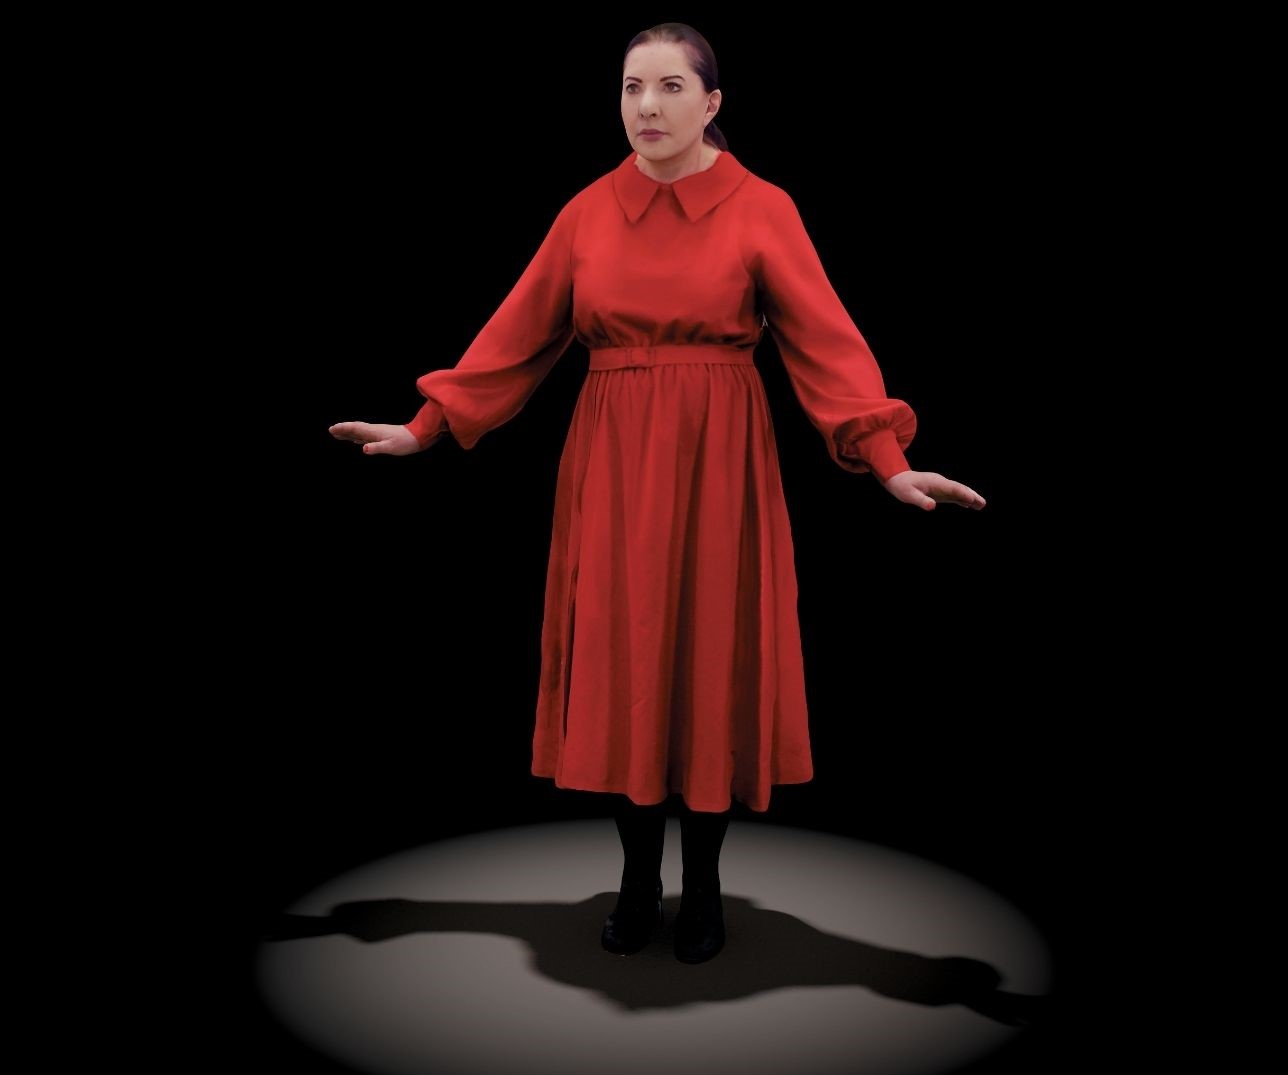 Hologramm der Performance-Künstlerin Marina Abramović, die ein rotes Kleid trägt und ihre Arme von sich streckt. Ihr Blick führt an den Betrachtenden vorbei.